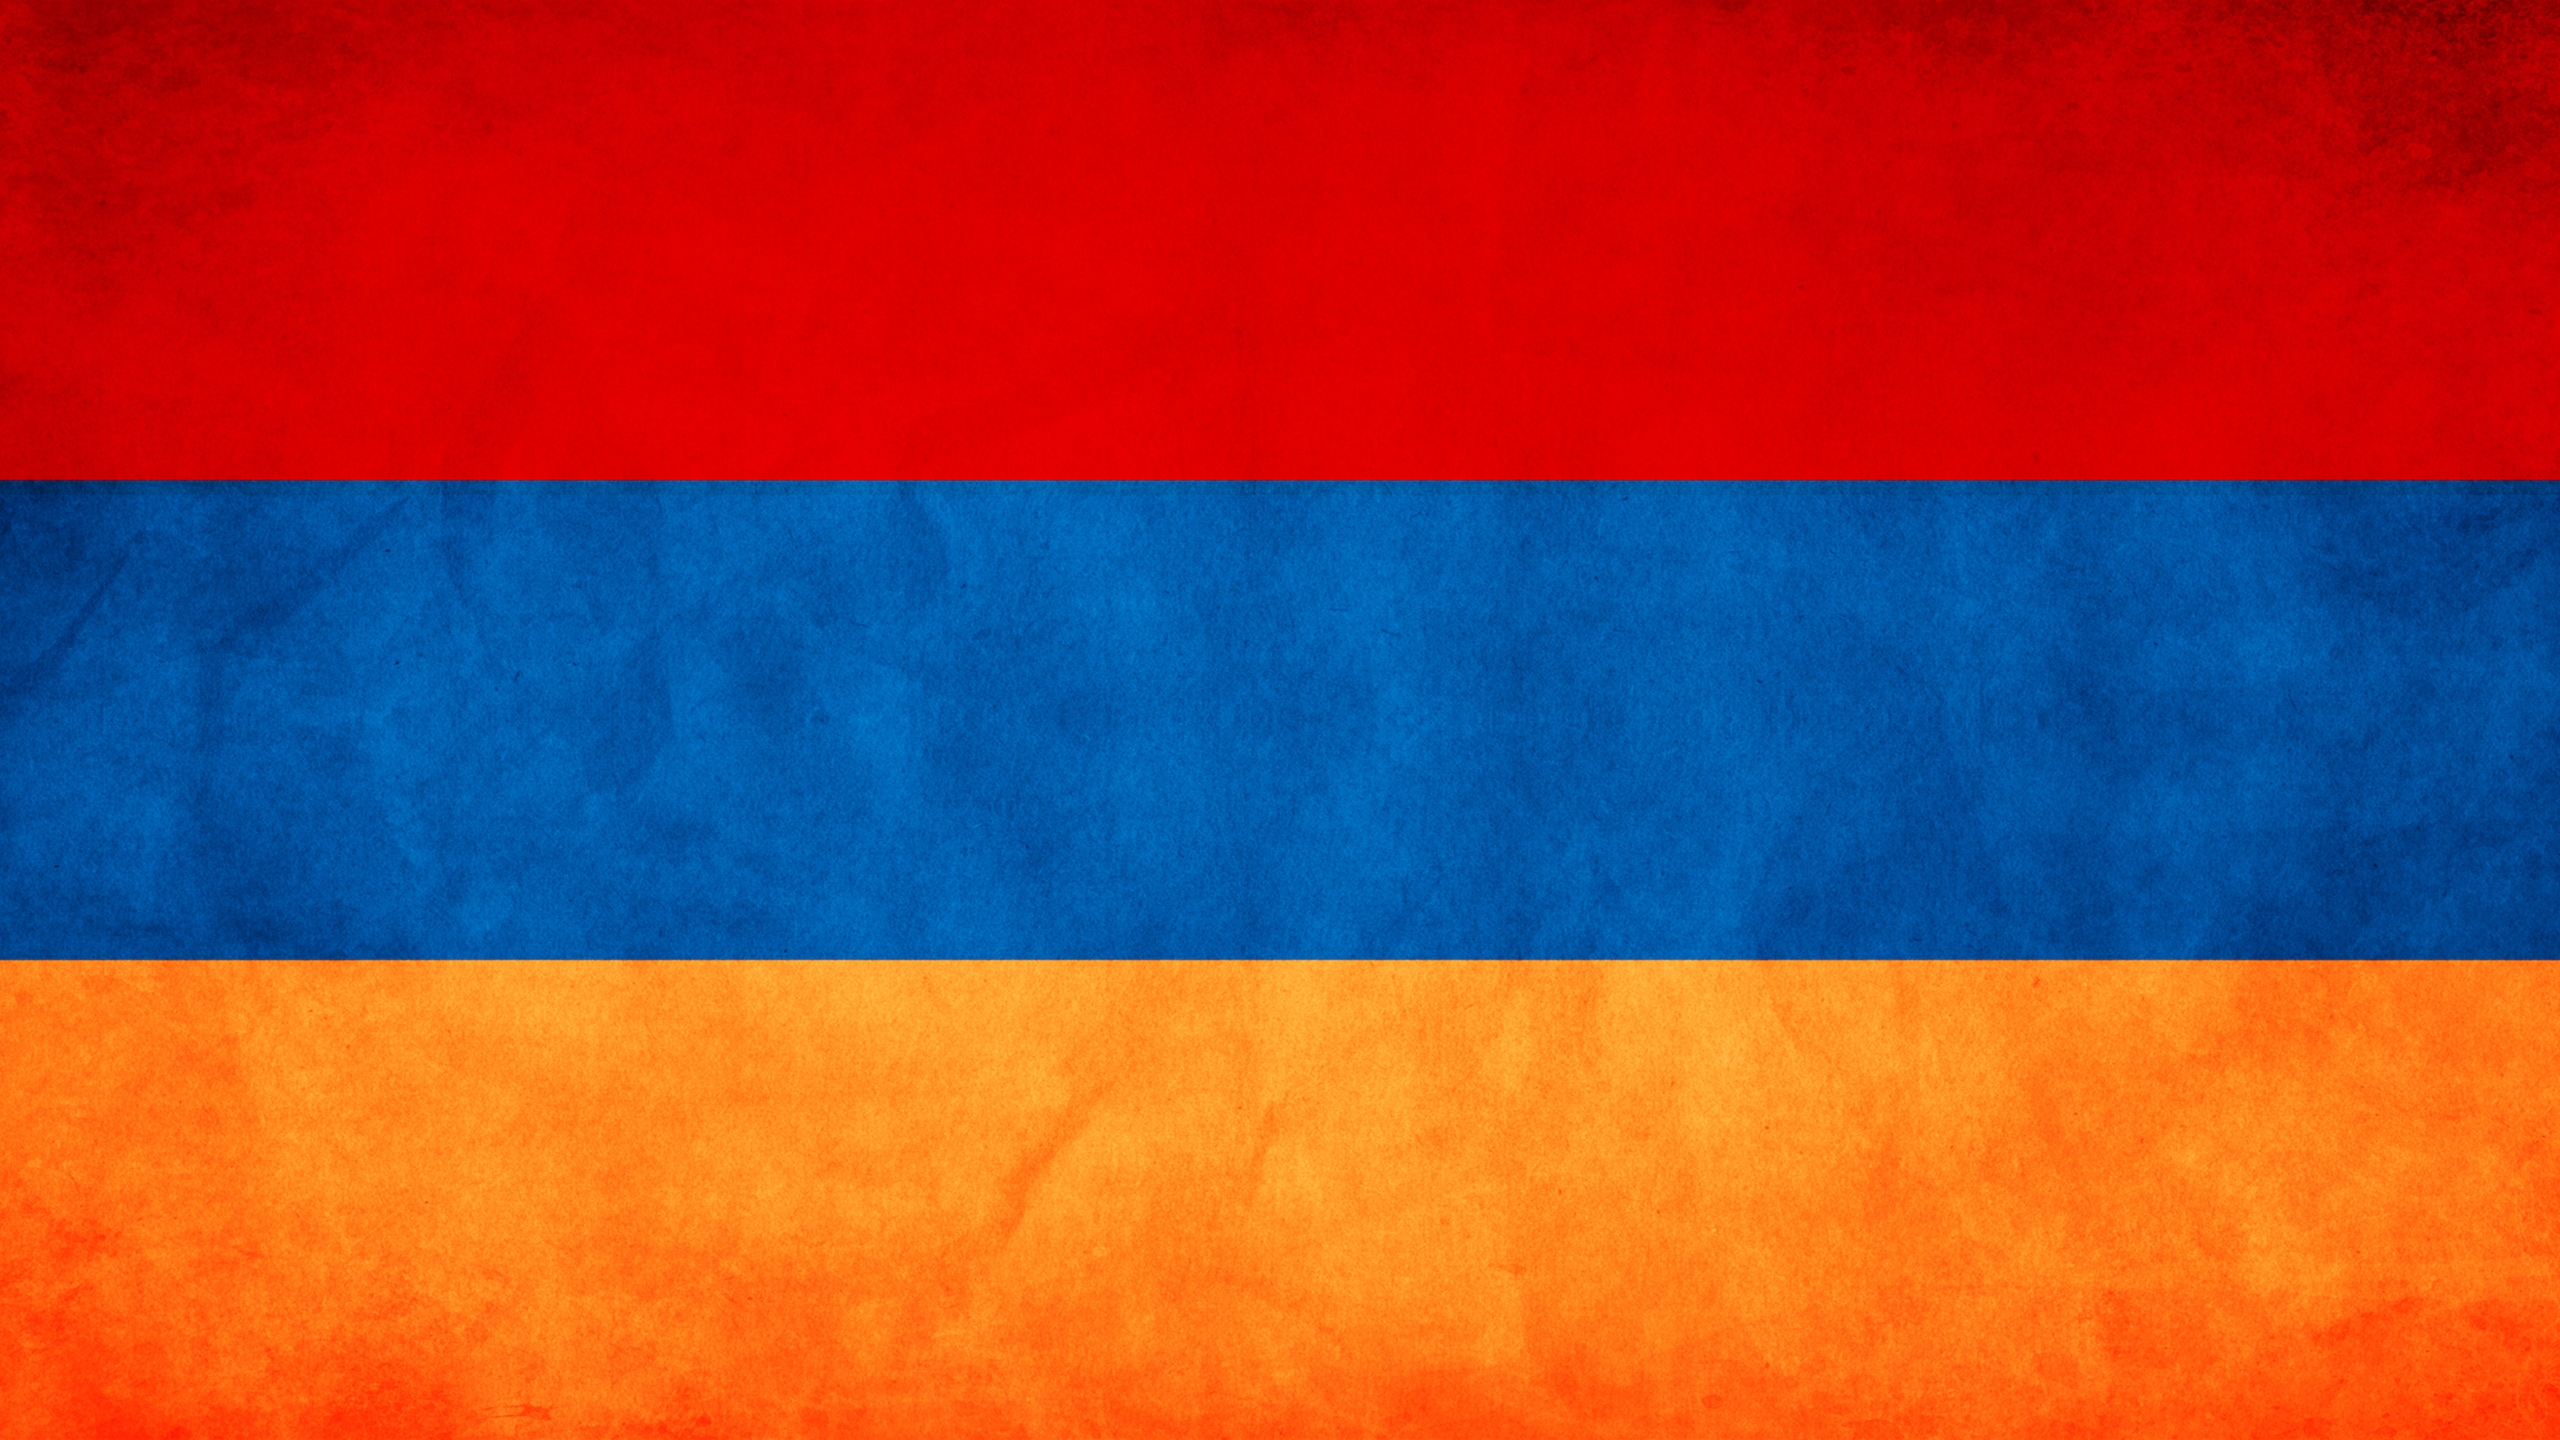 Armenia Flag for 2560x1440 HDTV resolution